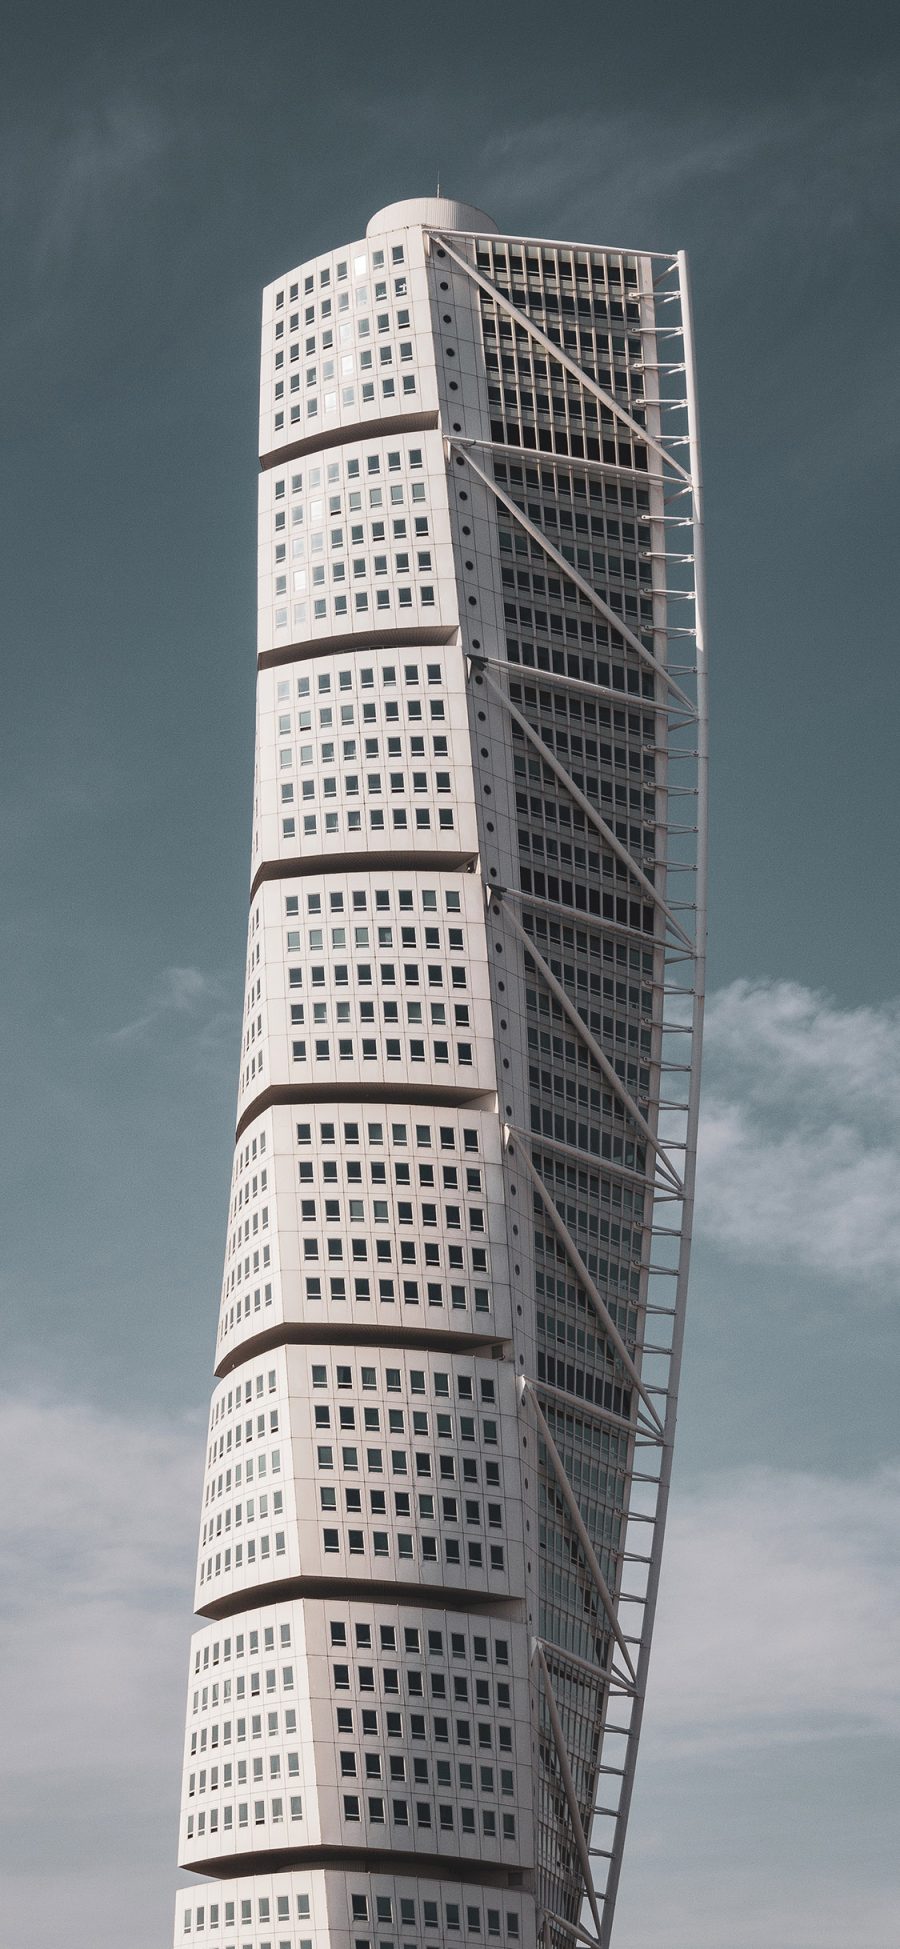 [2436×1125]城市 建筑 高楼大厦 苹果手机壁纸图片